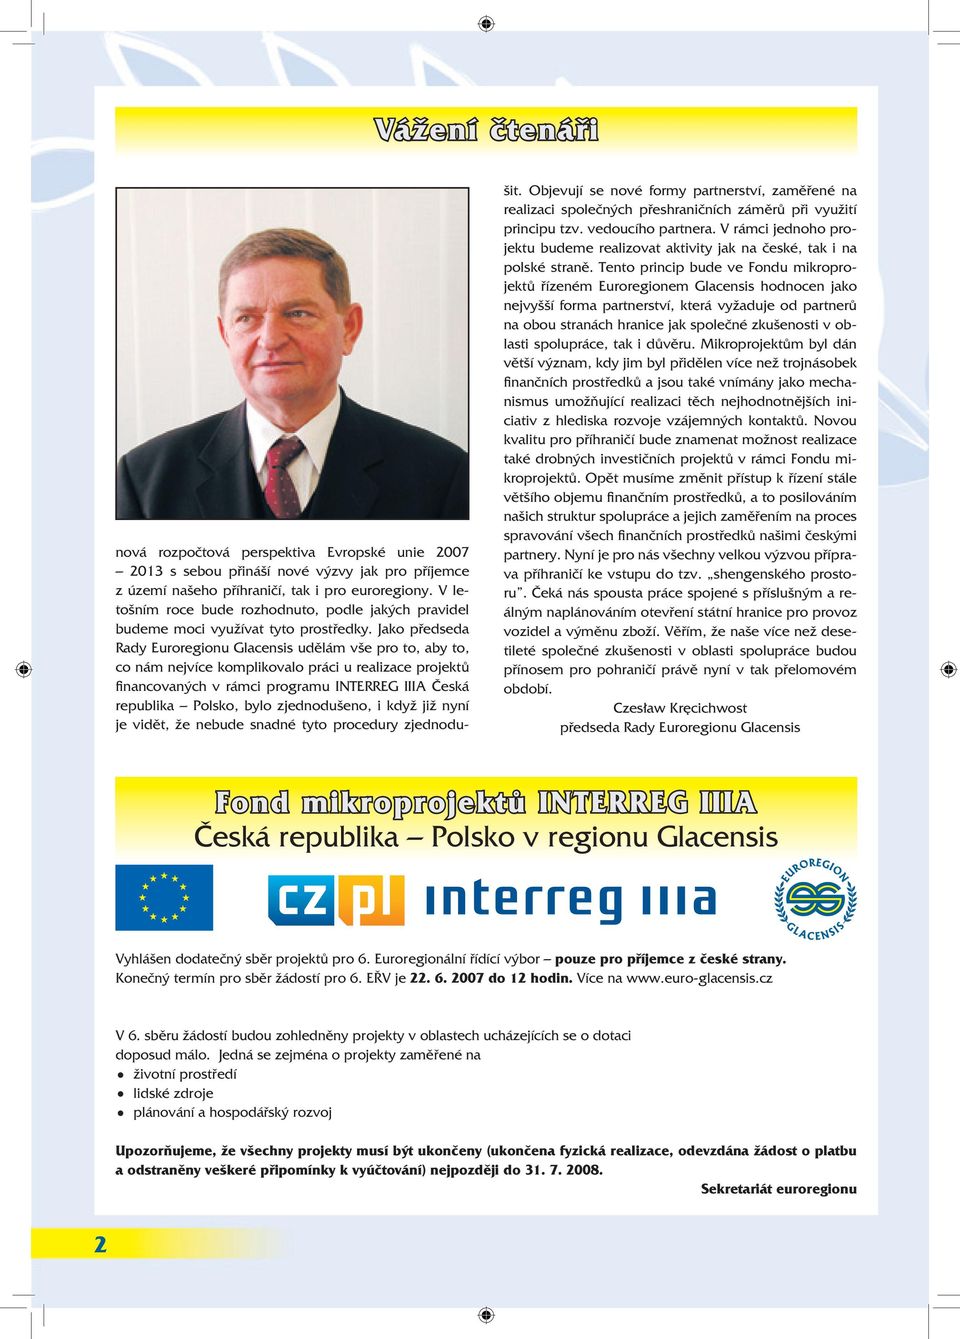 Jako předseda Rady Euroregionu Glacensis udělám vše pro to, aby to, co nám nejvíce komplikovalo práci u realizace projektů financovaných v rámci programu INTERREG IIIA Česká republika Polsko, bylo